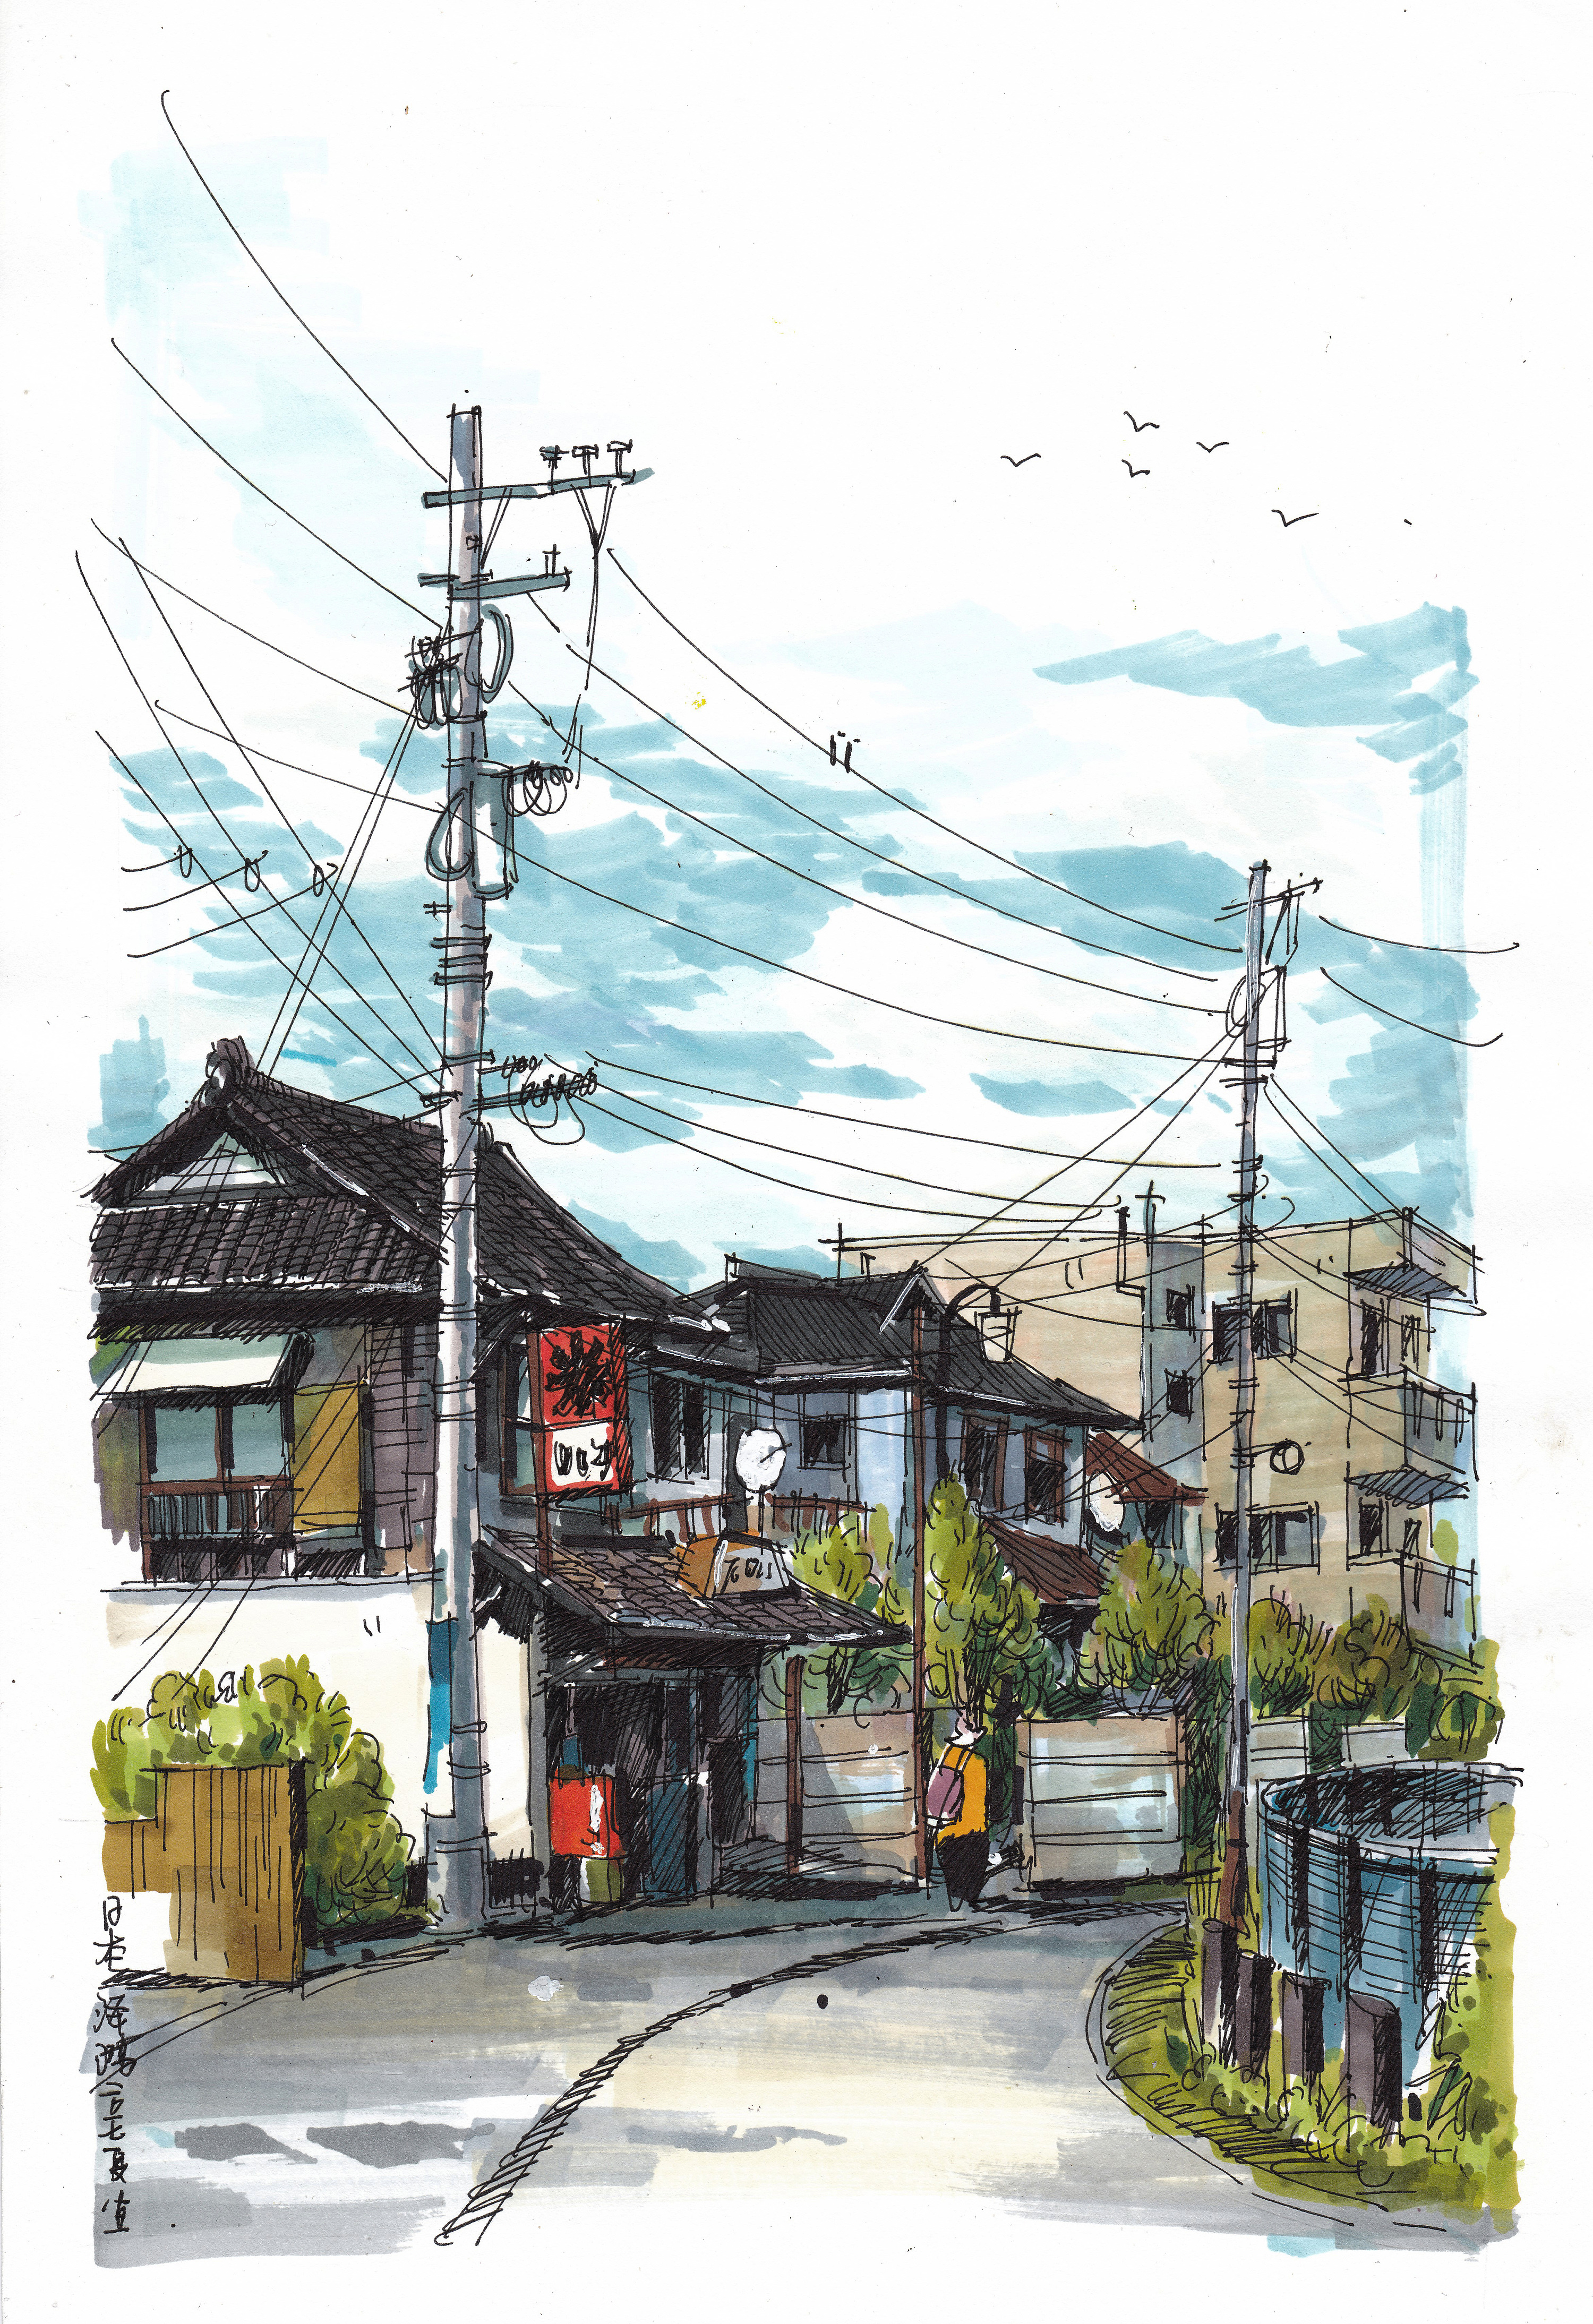 马克笔风景手绘---日本街景